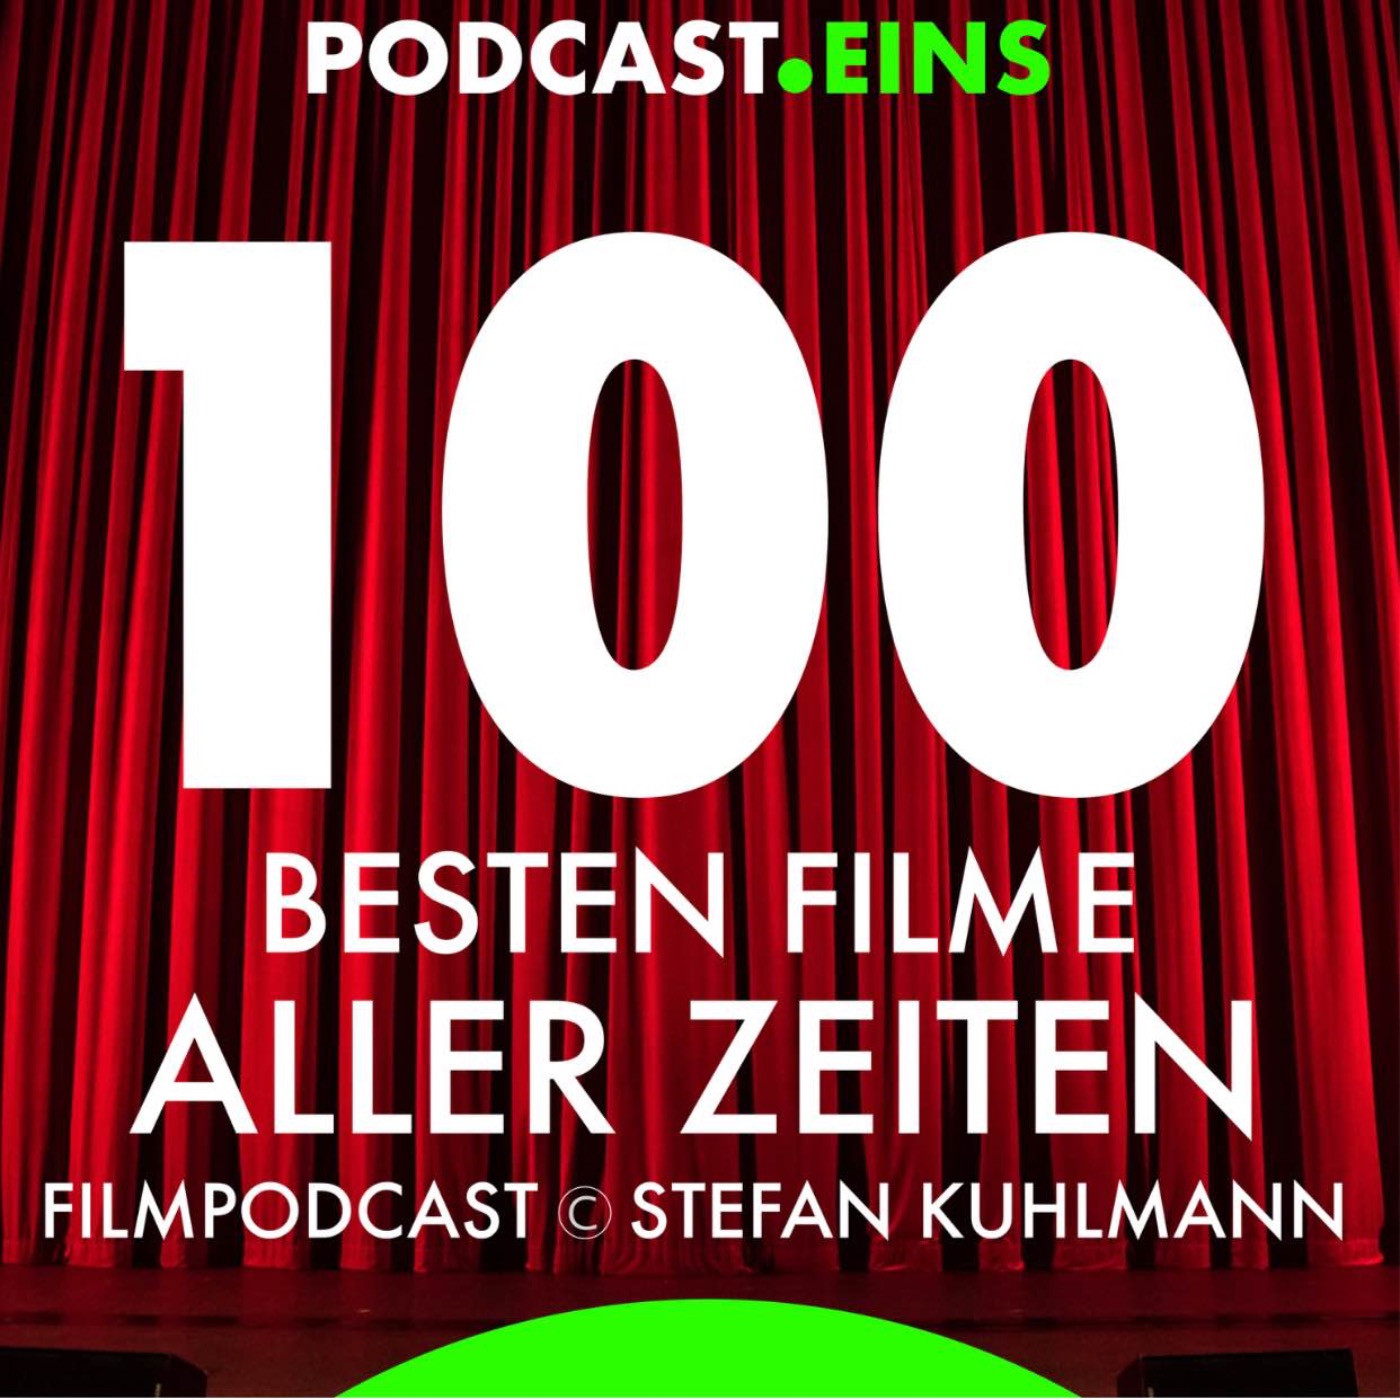 Die 100 besten Filme aller Zeiten | 100 besten Filme aller Zeiten on Acast